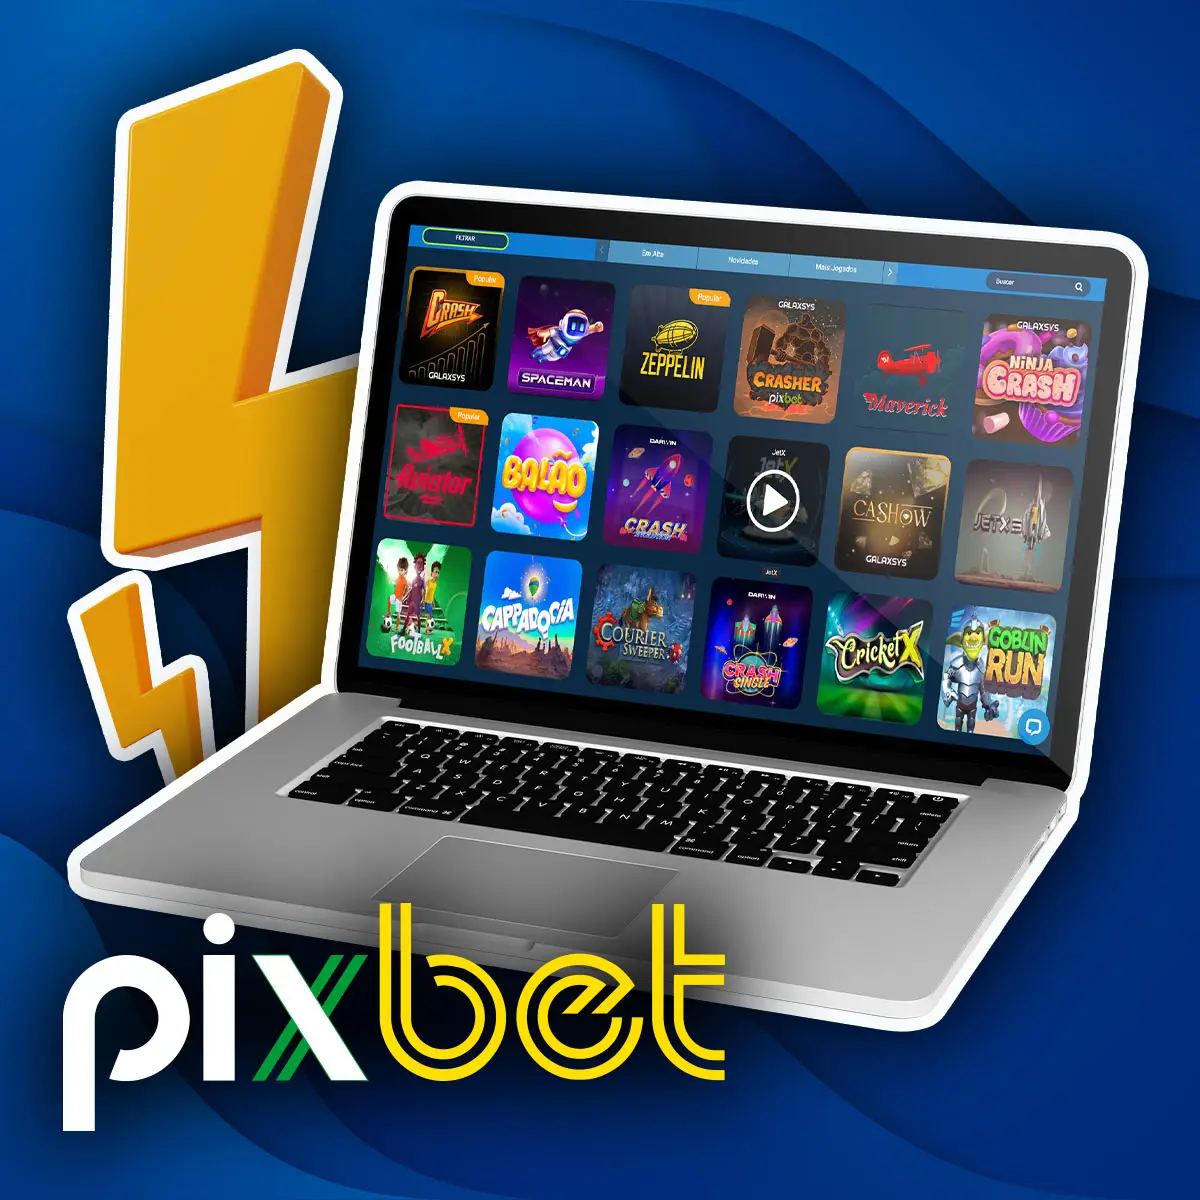 Jogos rápidos na casa de apostas Pixbet no Brasil